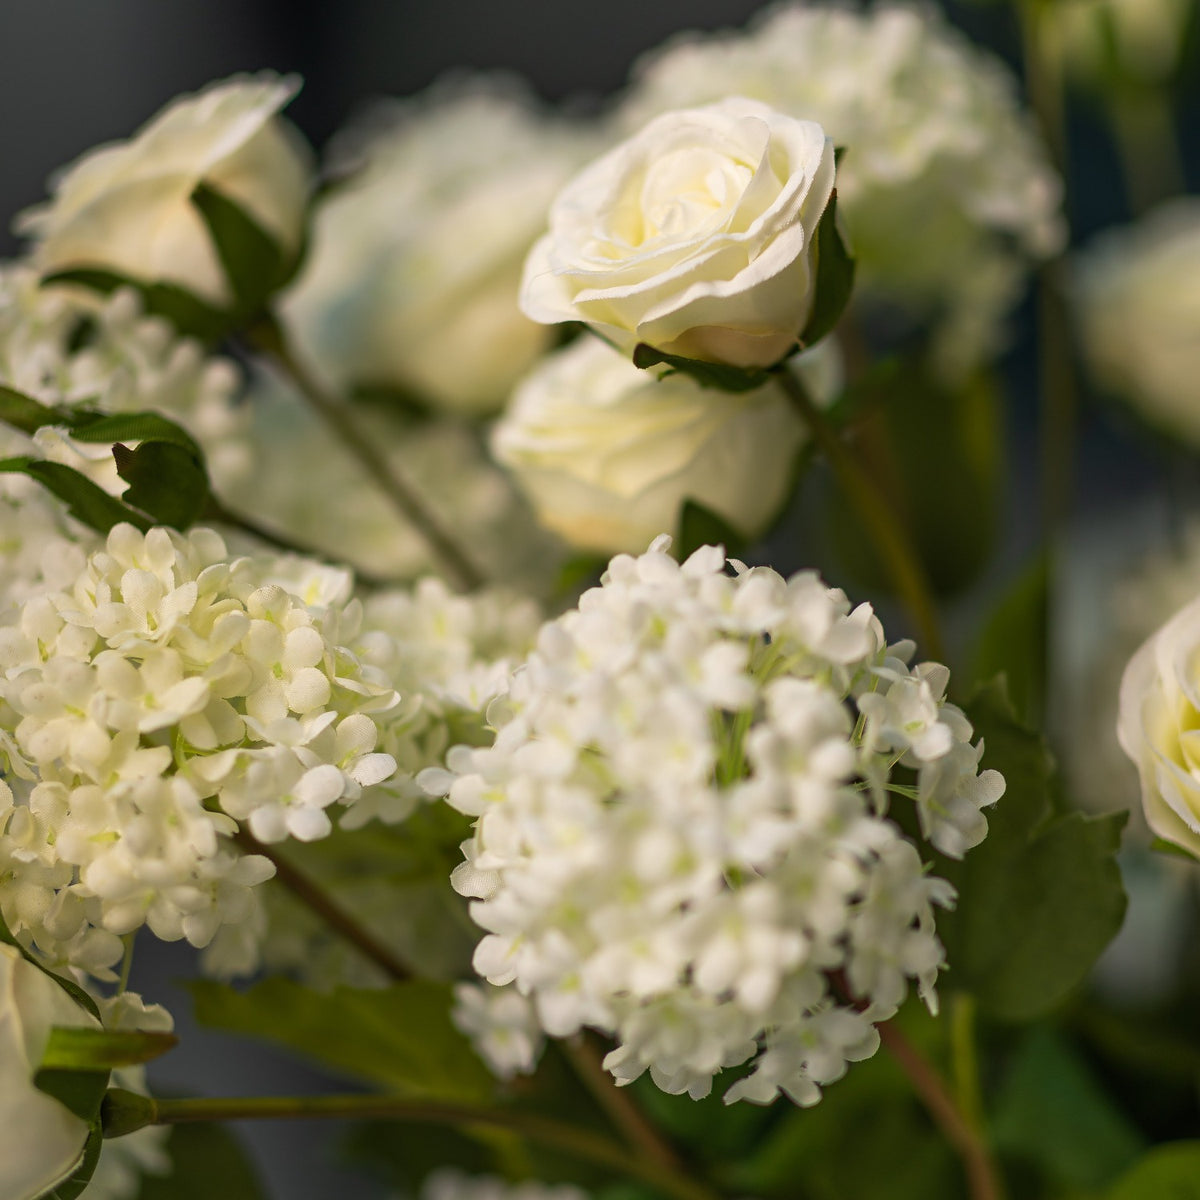 White Viburnum &amp; White Roses arrangement